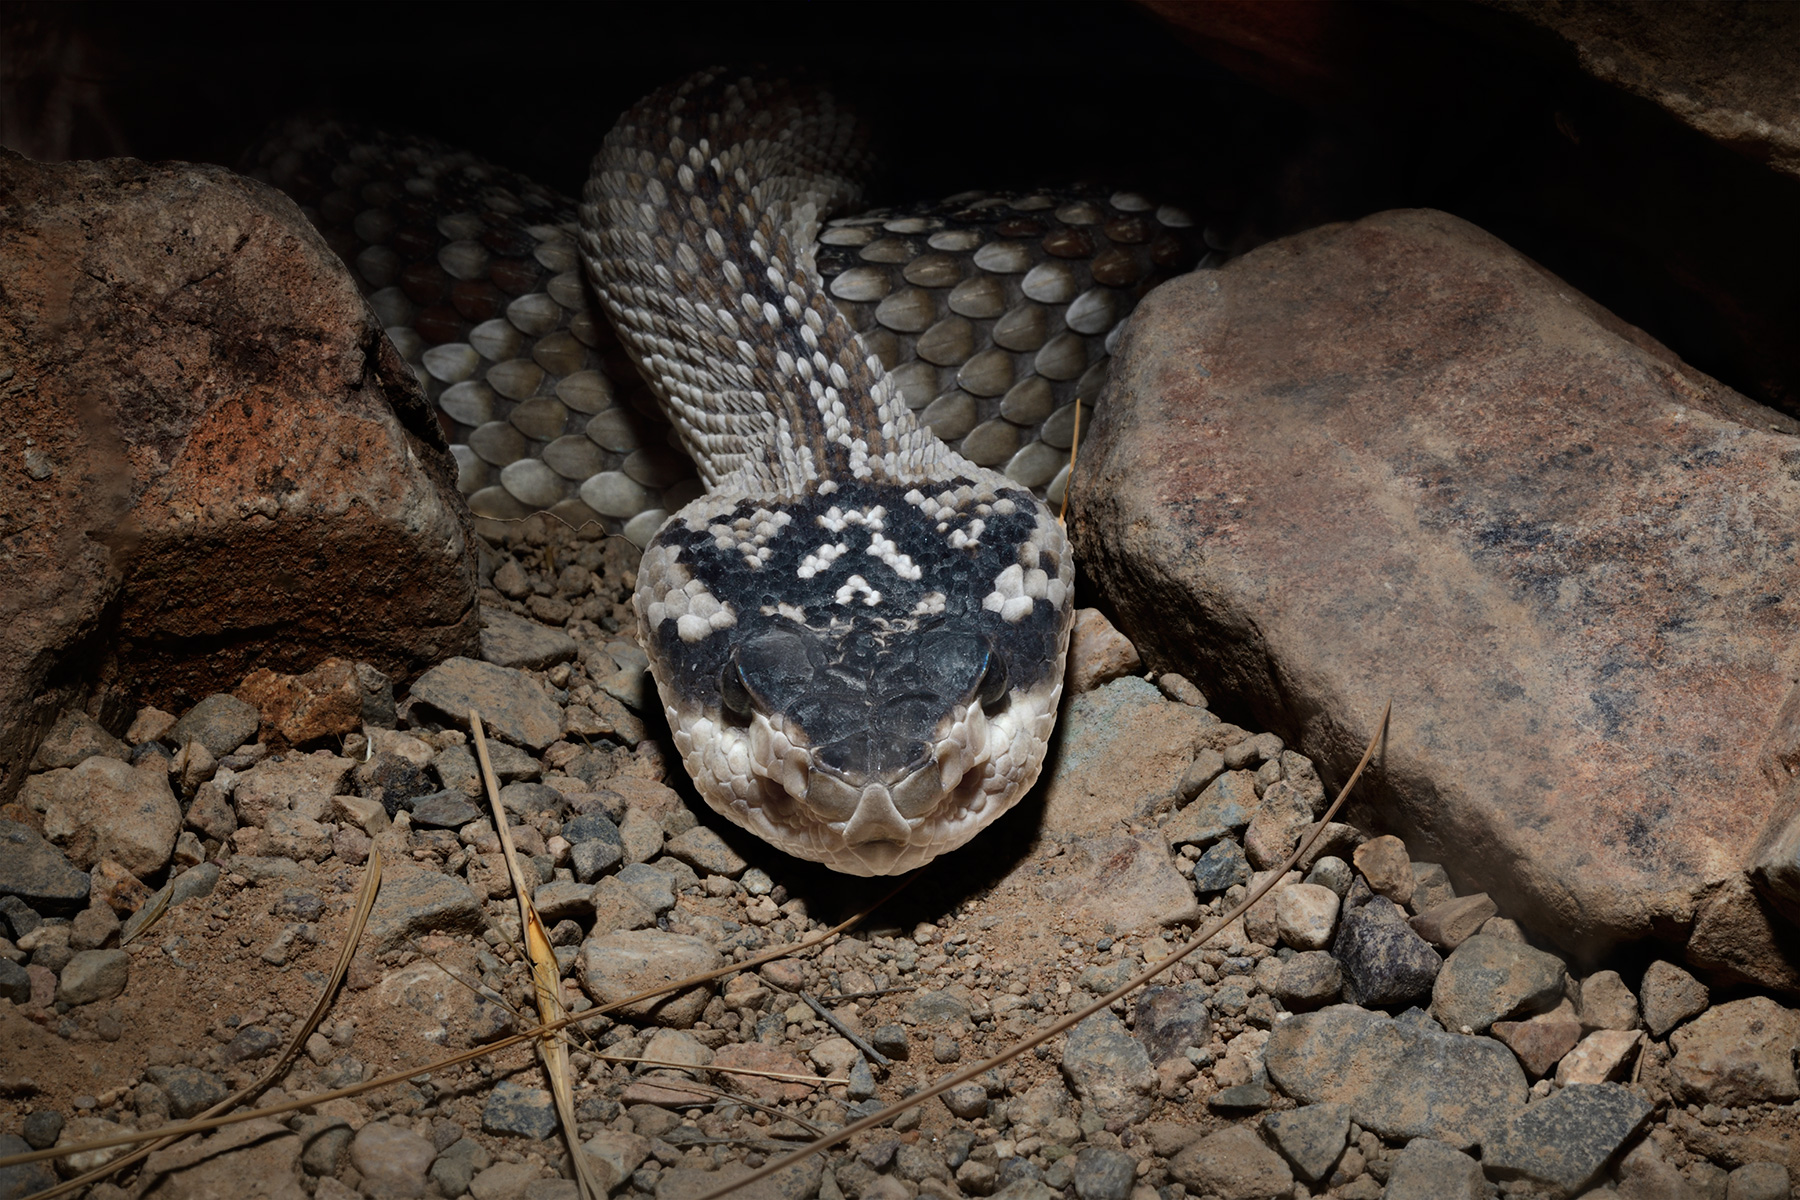 Désert de Sonora (Arizona, USA) - Serpent à sonnette (rattlesnake) sortant d'un trou